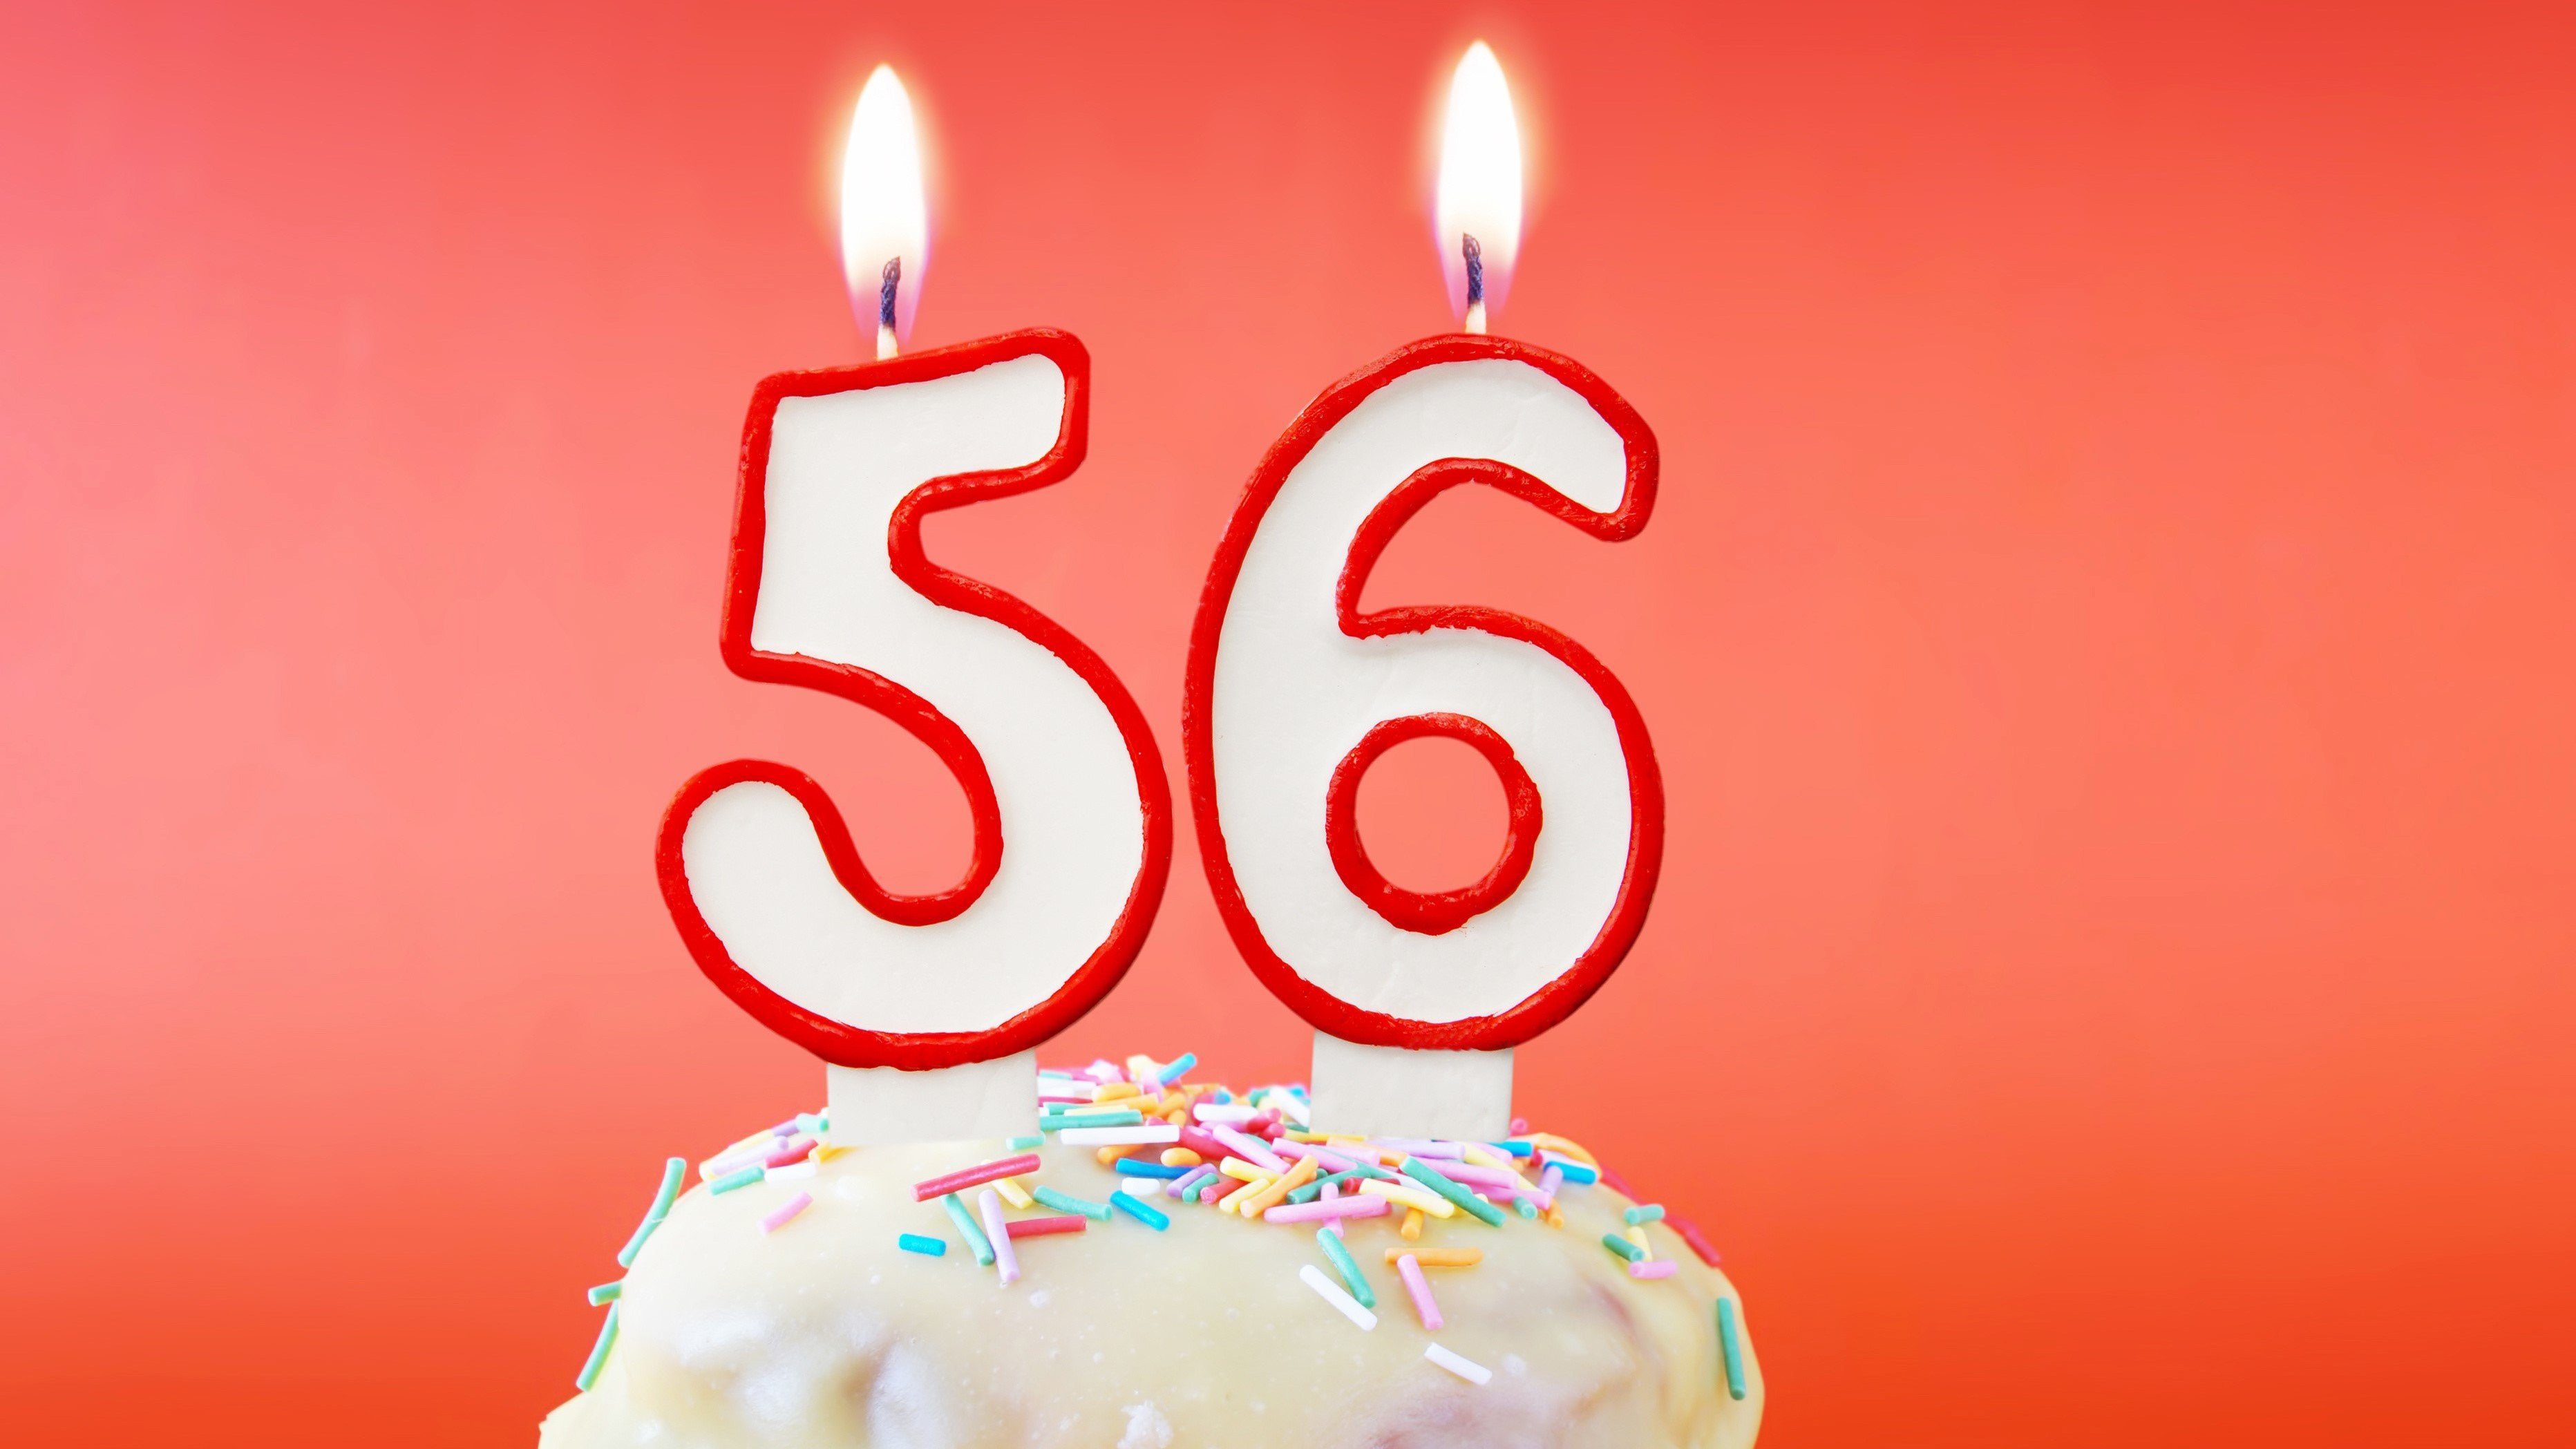 Mensagens de aniversário para 56 anos